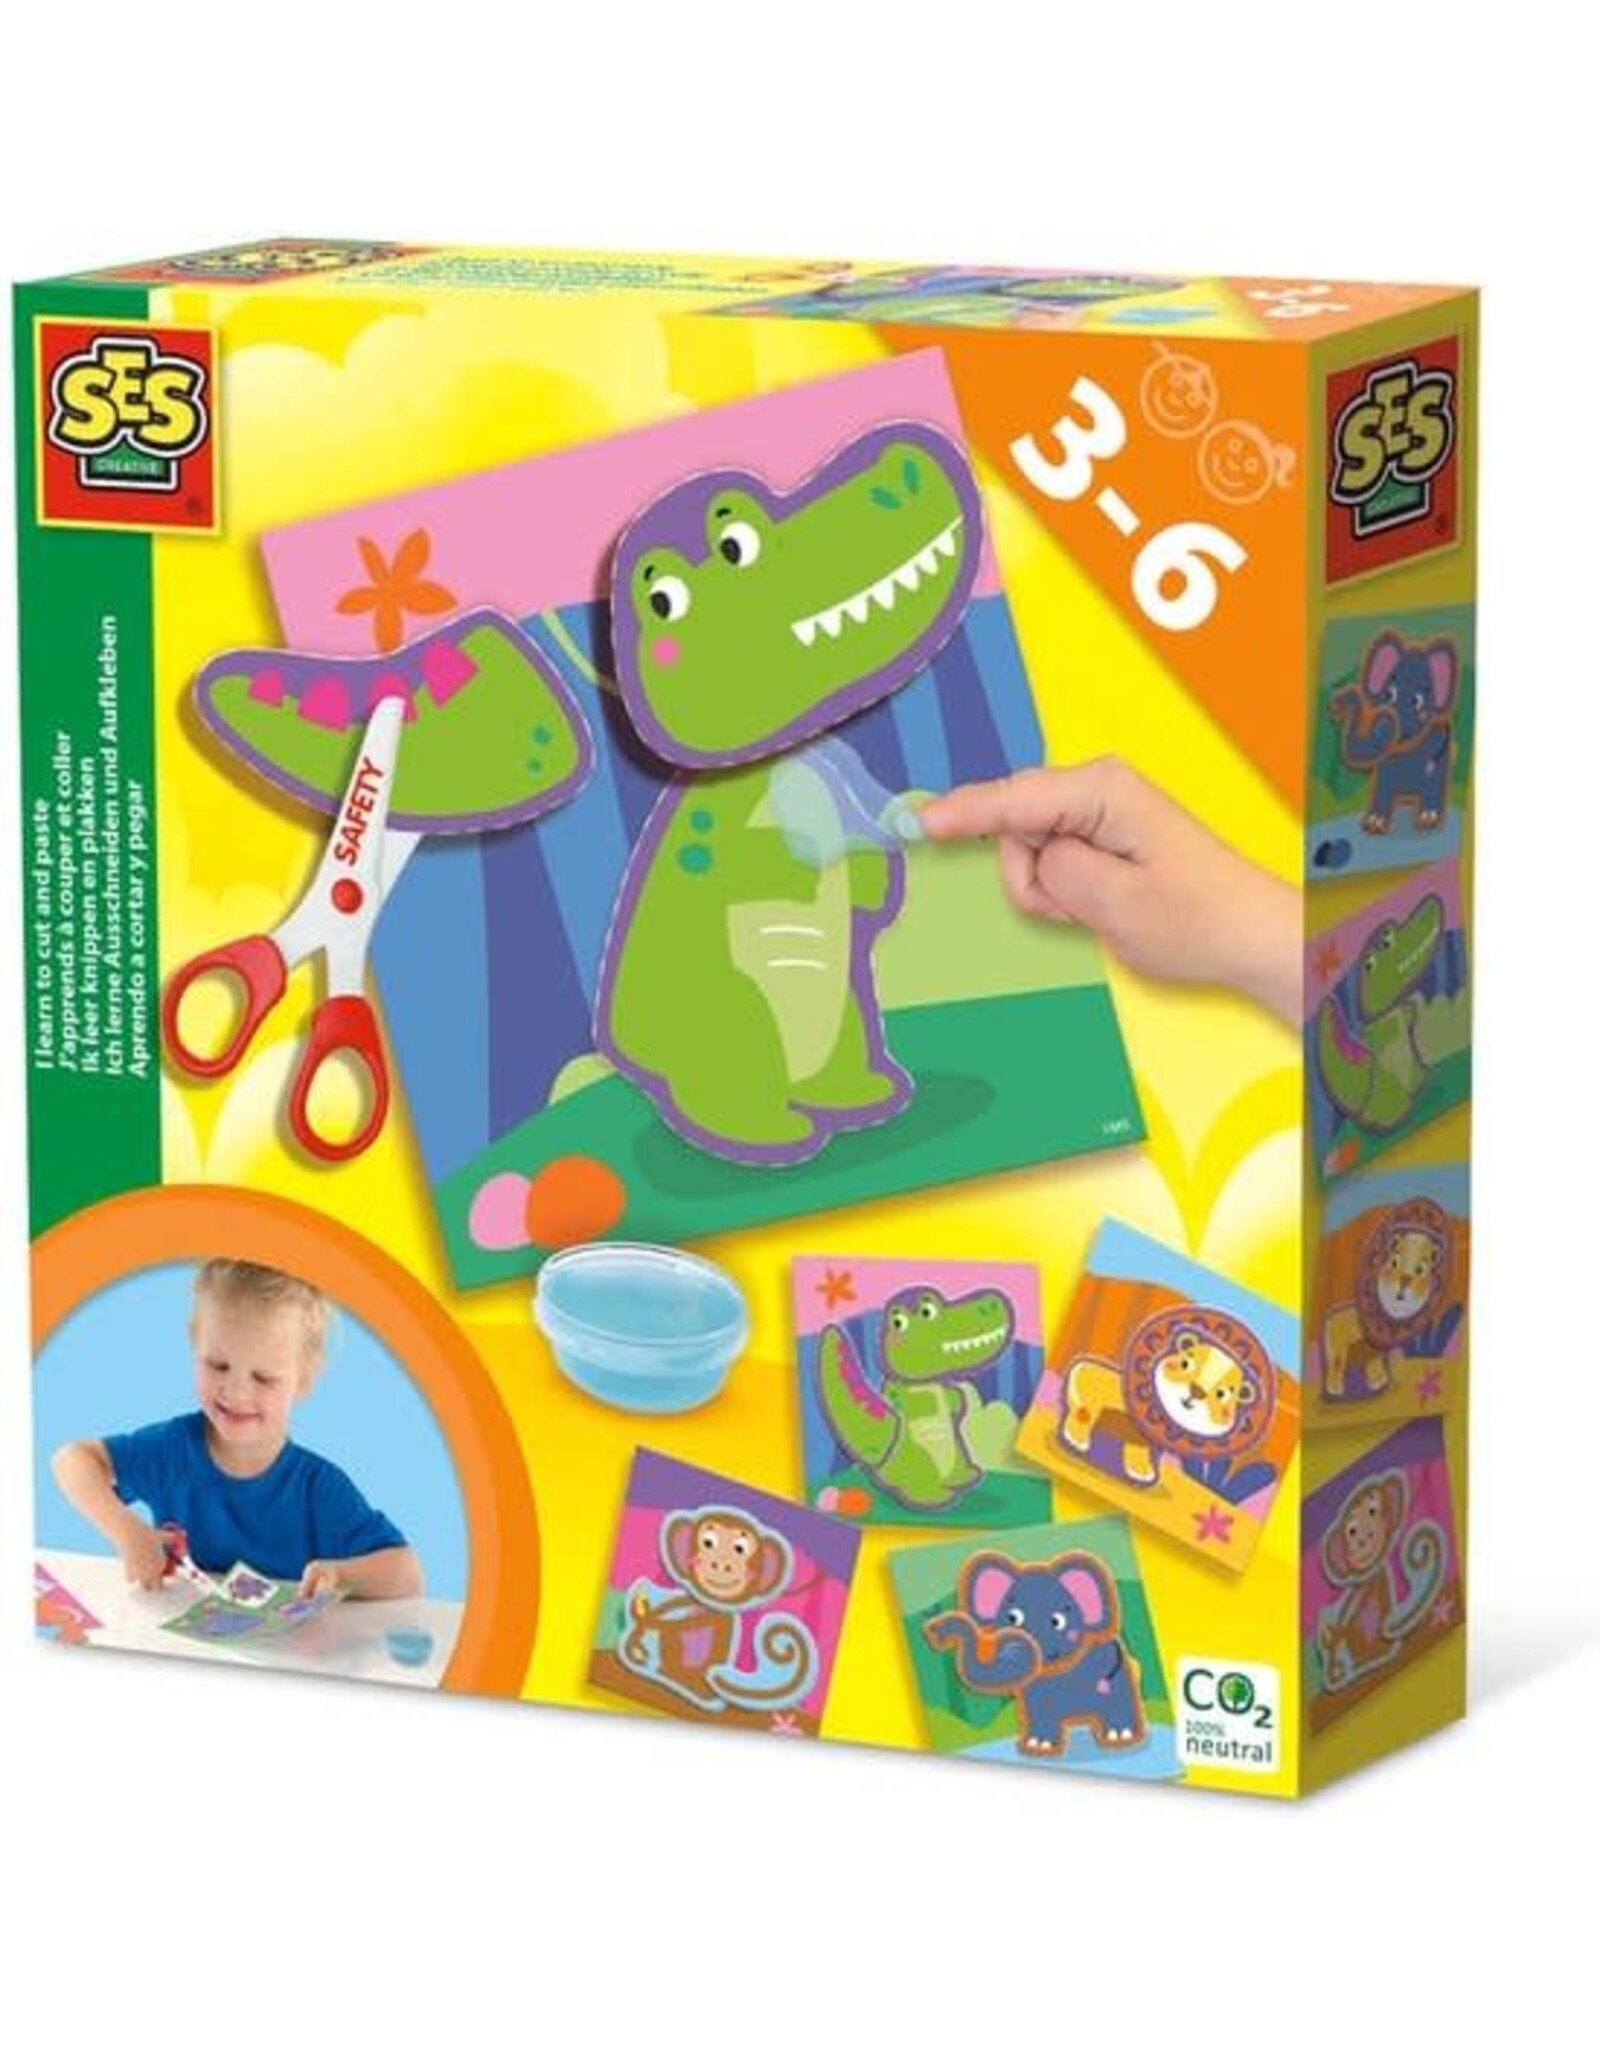 Ses SES - Ik leer knippen en plakken - 4 knip kaarten en 4 plak kaarten - inclusief veilige kinderschaar en vingerlijm